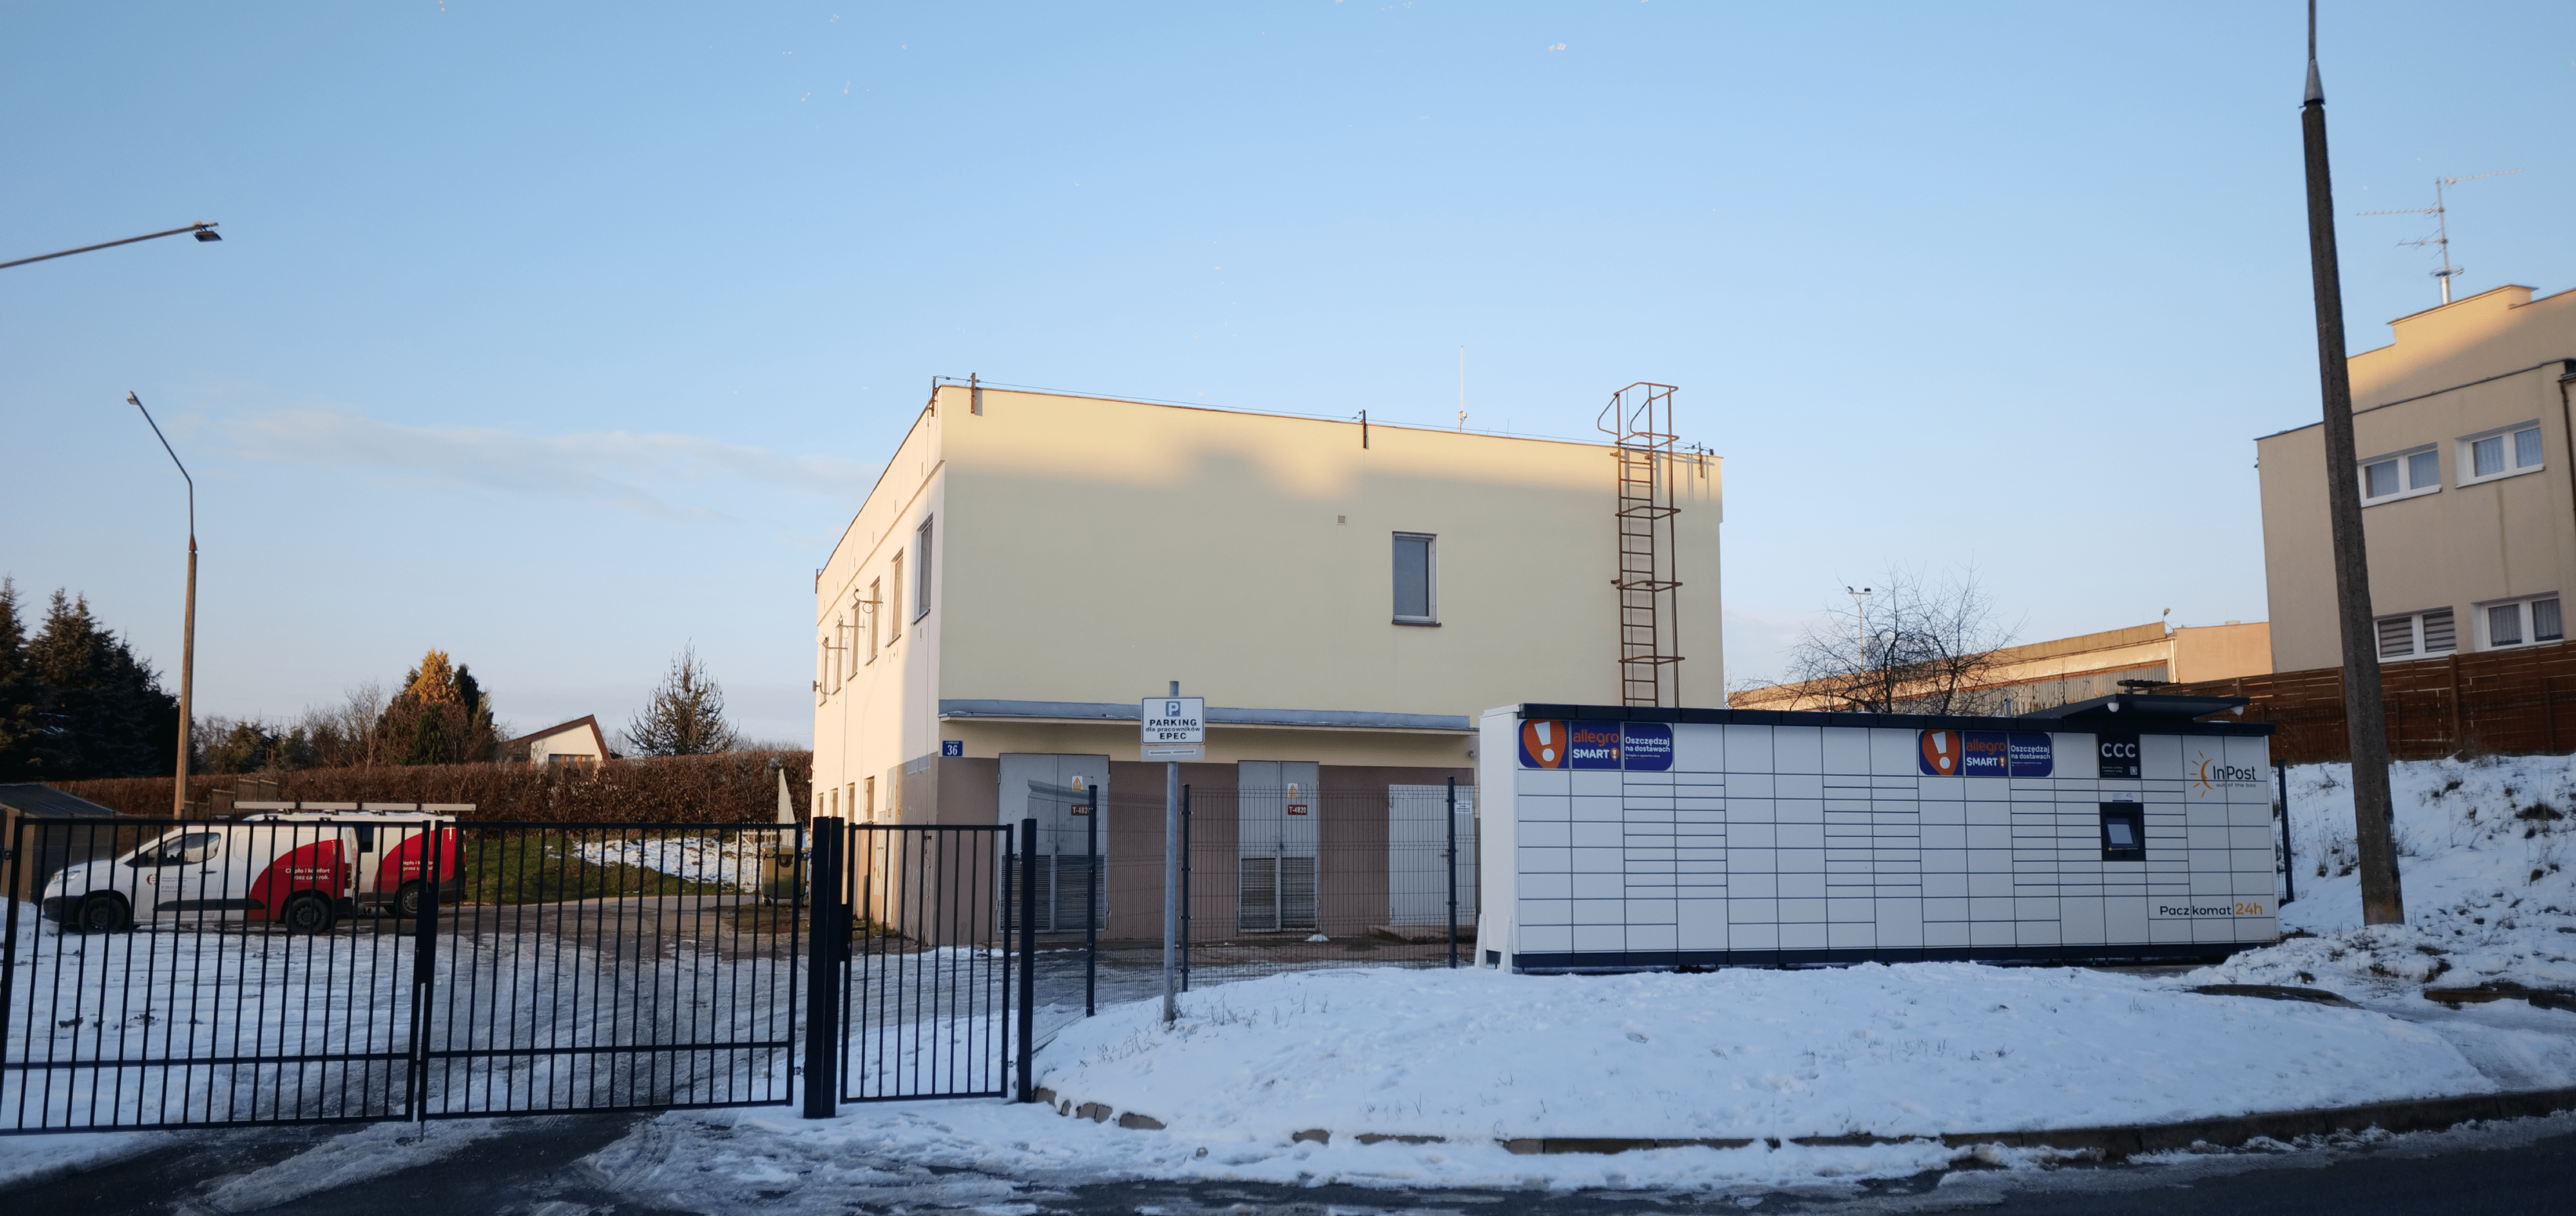 EPEC wynajmuje swoje tereny pod usługi skierowane do mieszkańców Elbląga